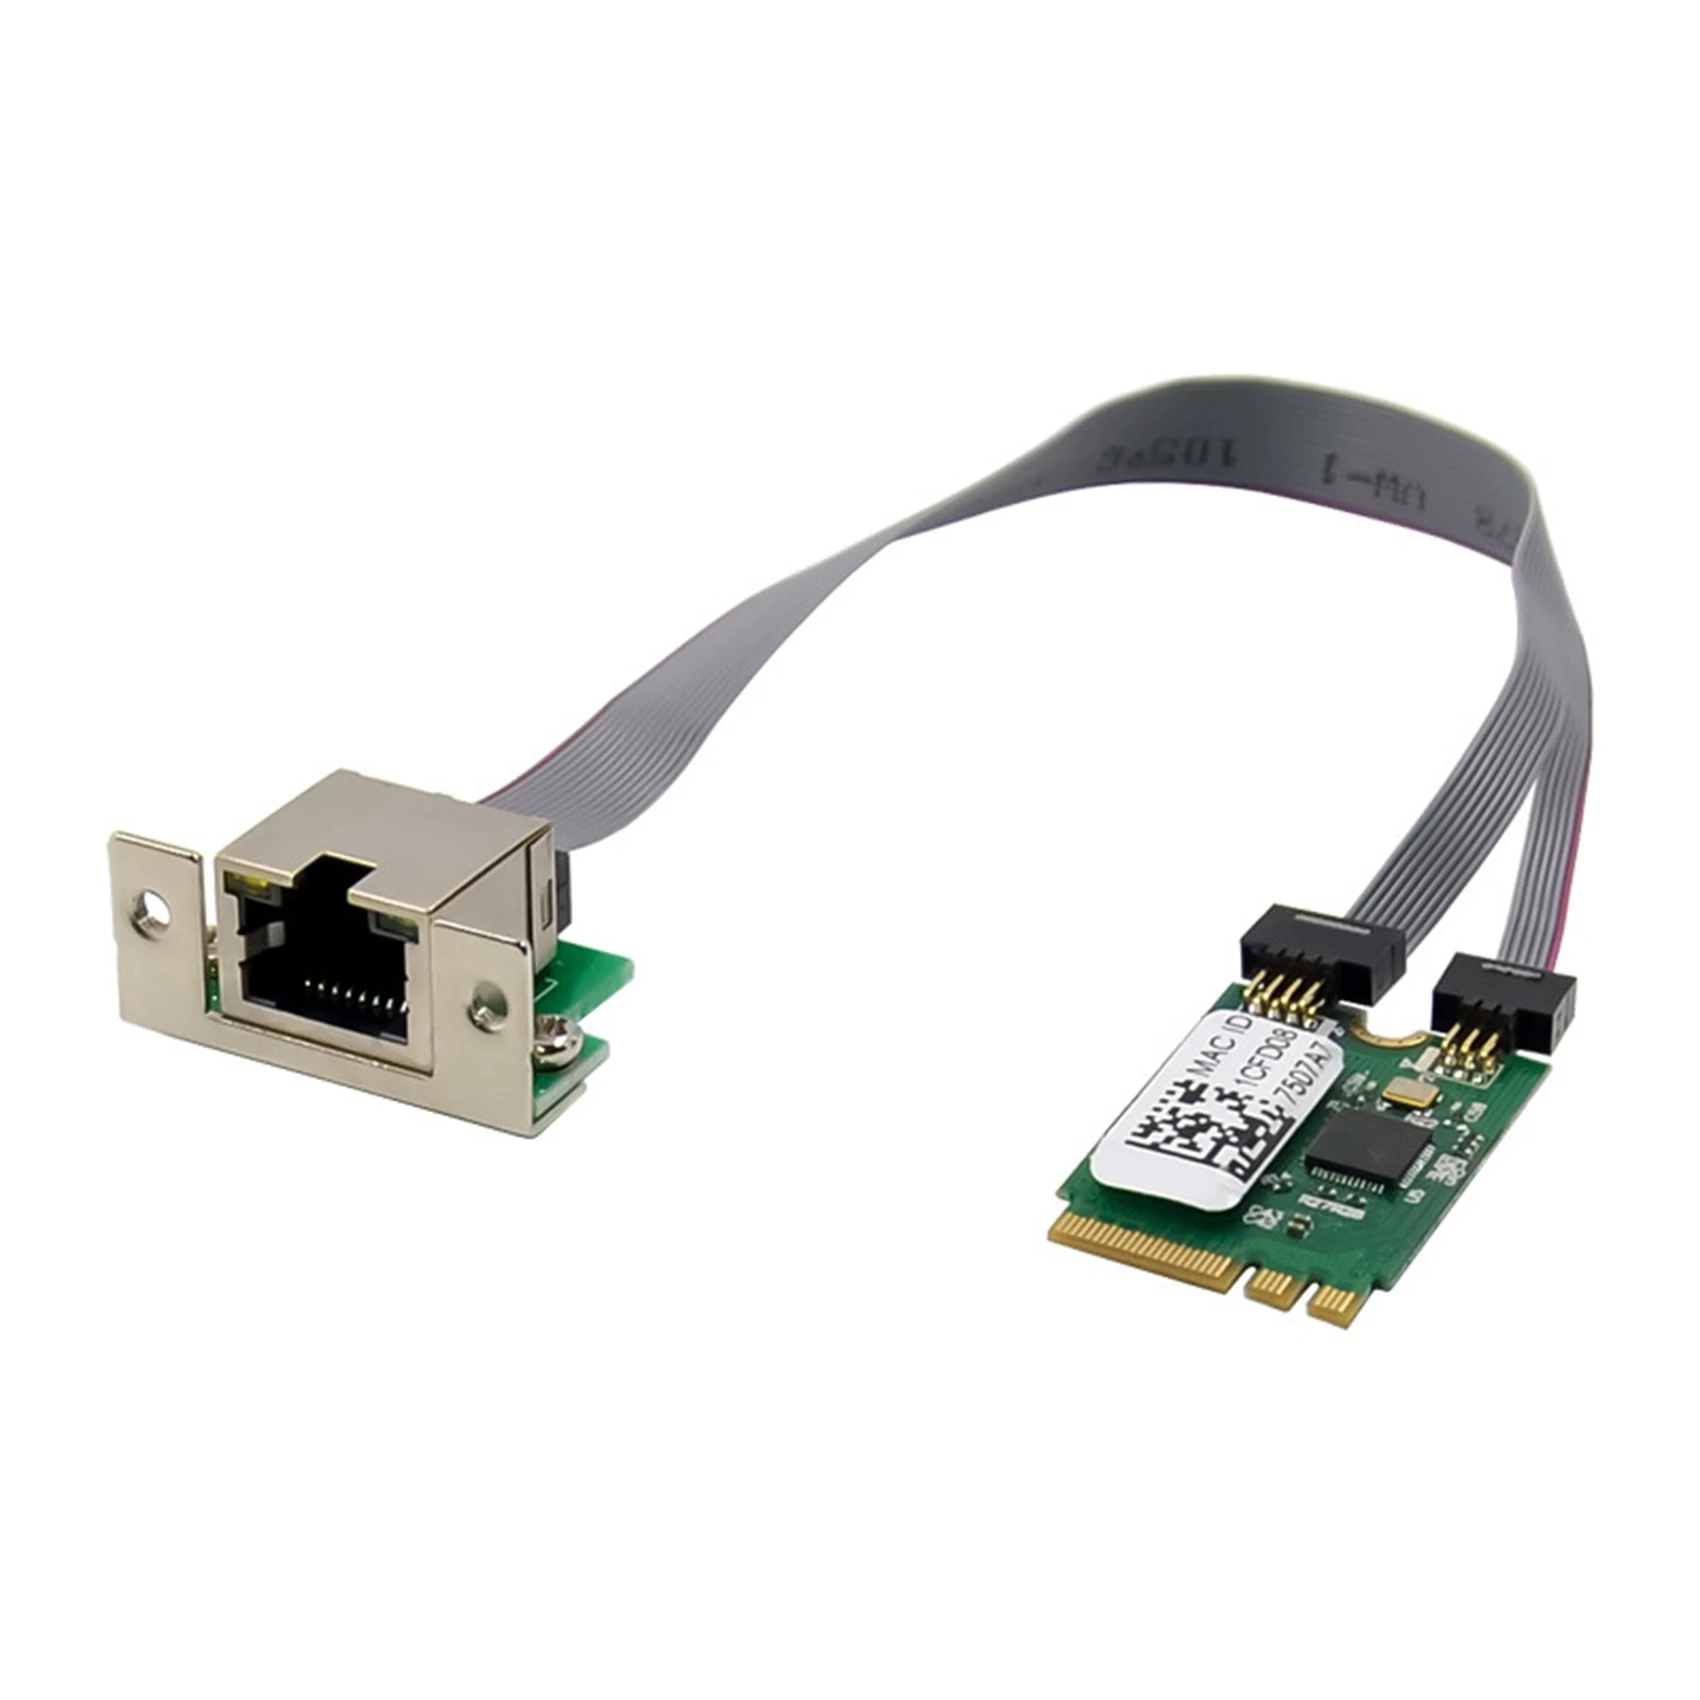 

M.2 A + E ключ 2,5G Ethernet LAN Карта RTL8125B сетевая карта промышленного контроля PCI Express сетевой адаптер